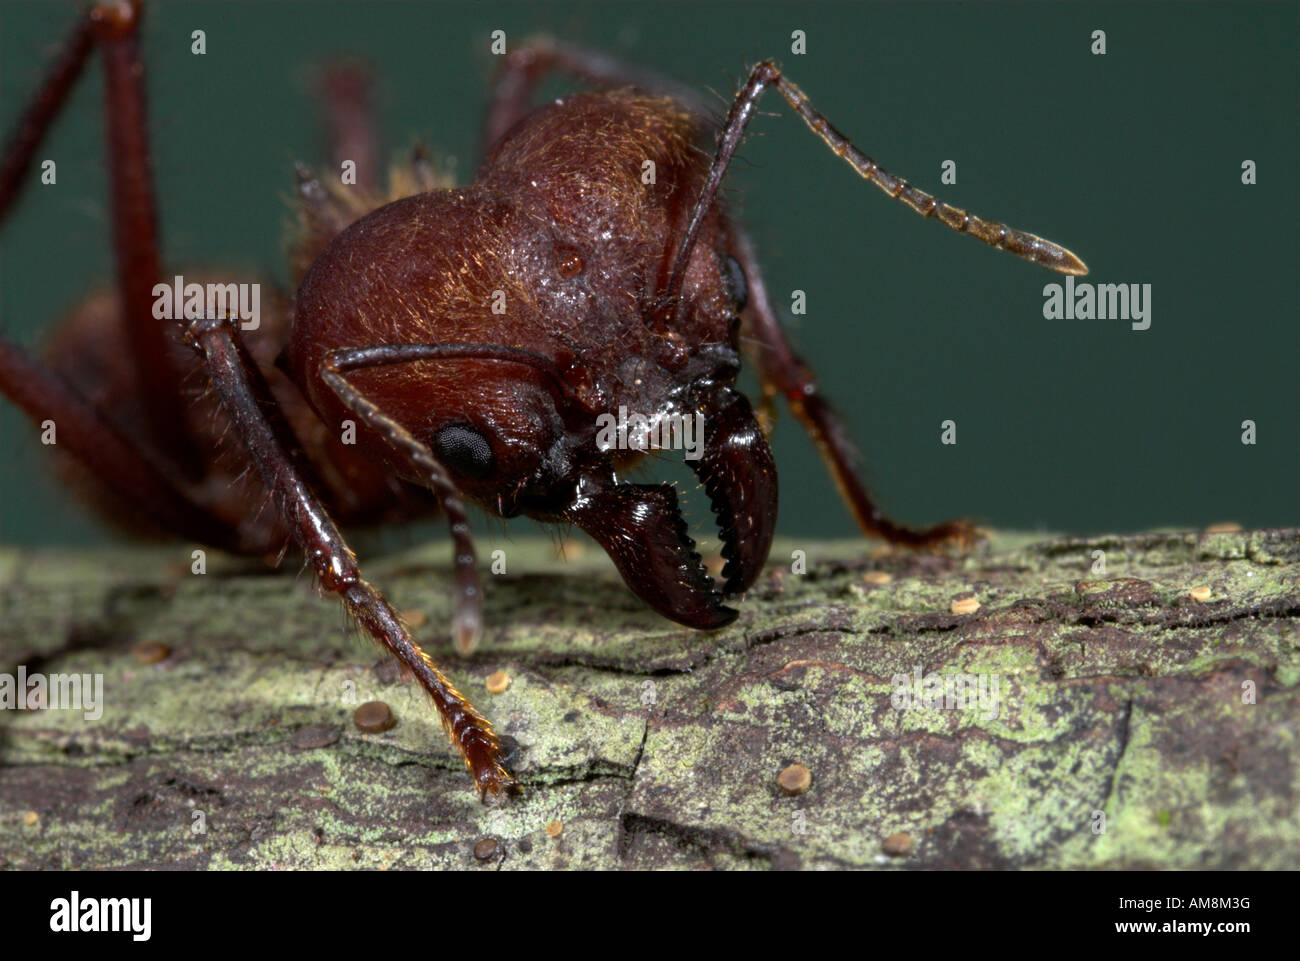 Soldat Ant Blatt Scherblock Atta Cephalotes Nahaufnahme von Kiefer Amazon  Rainforest Iquitos Peru Stockfotografie - Alamy